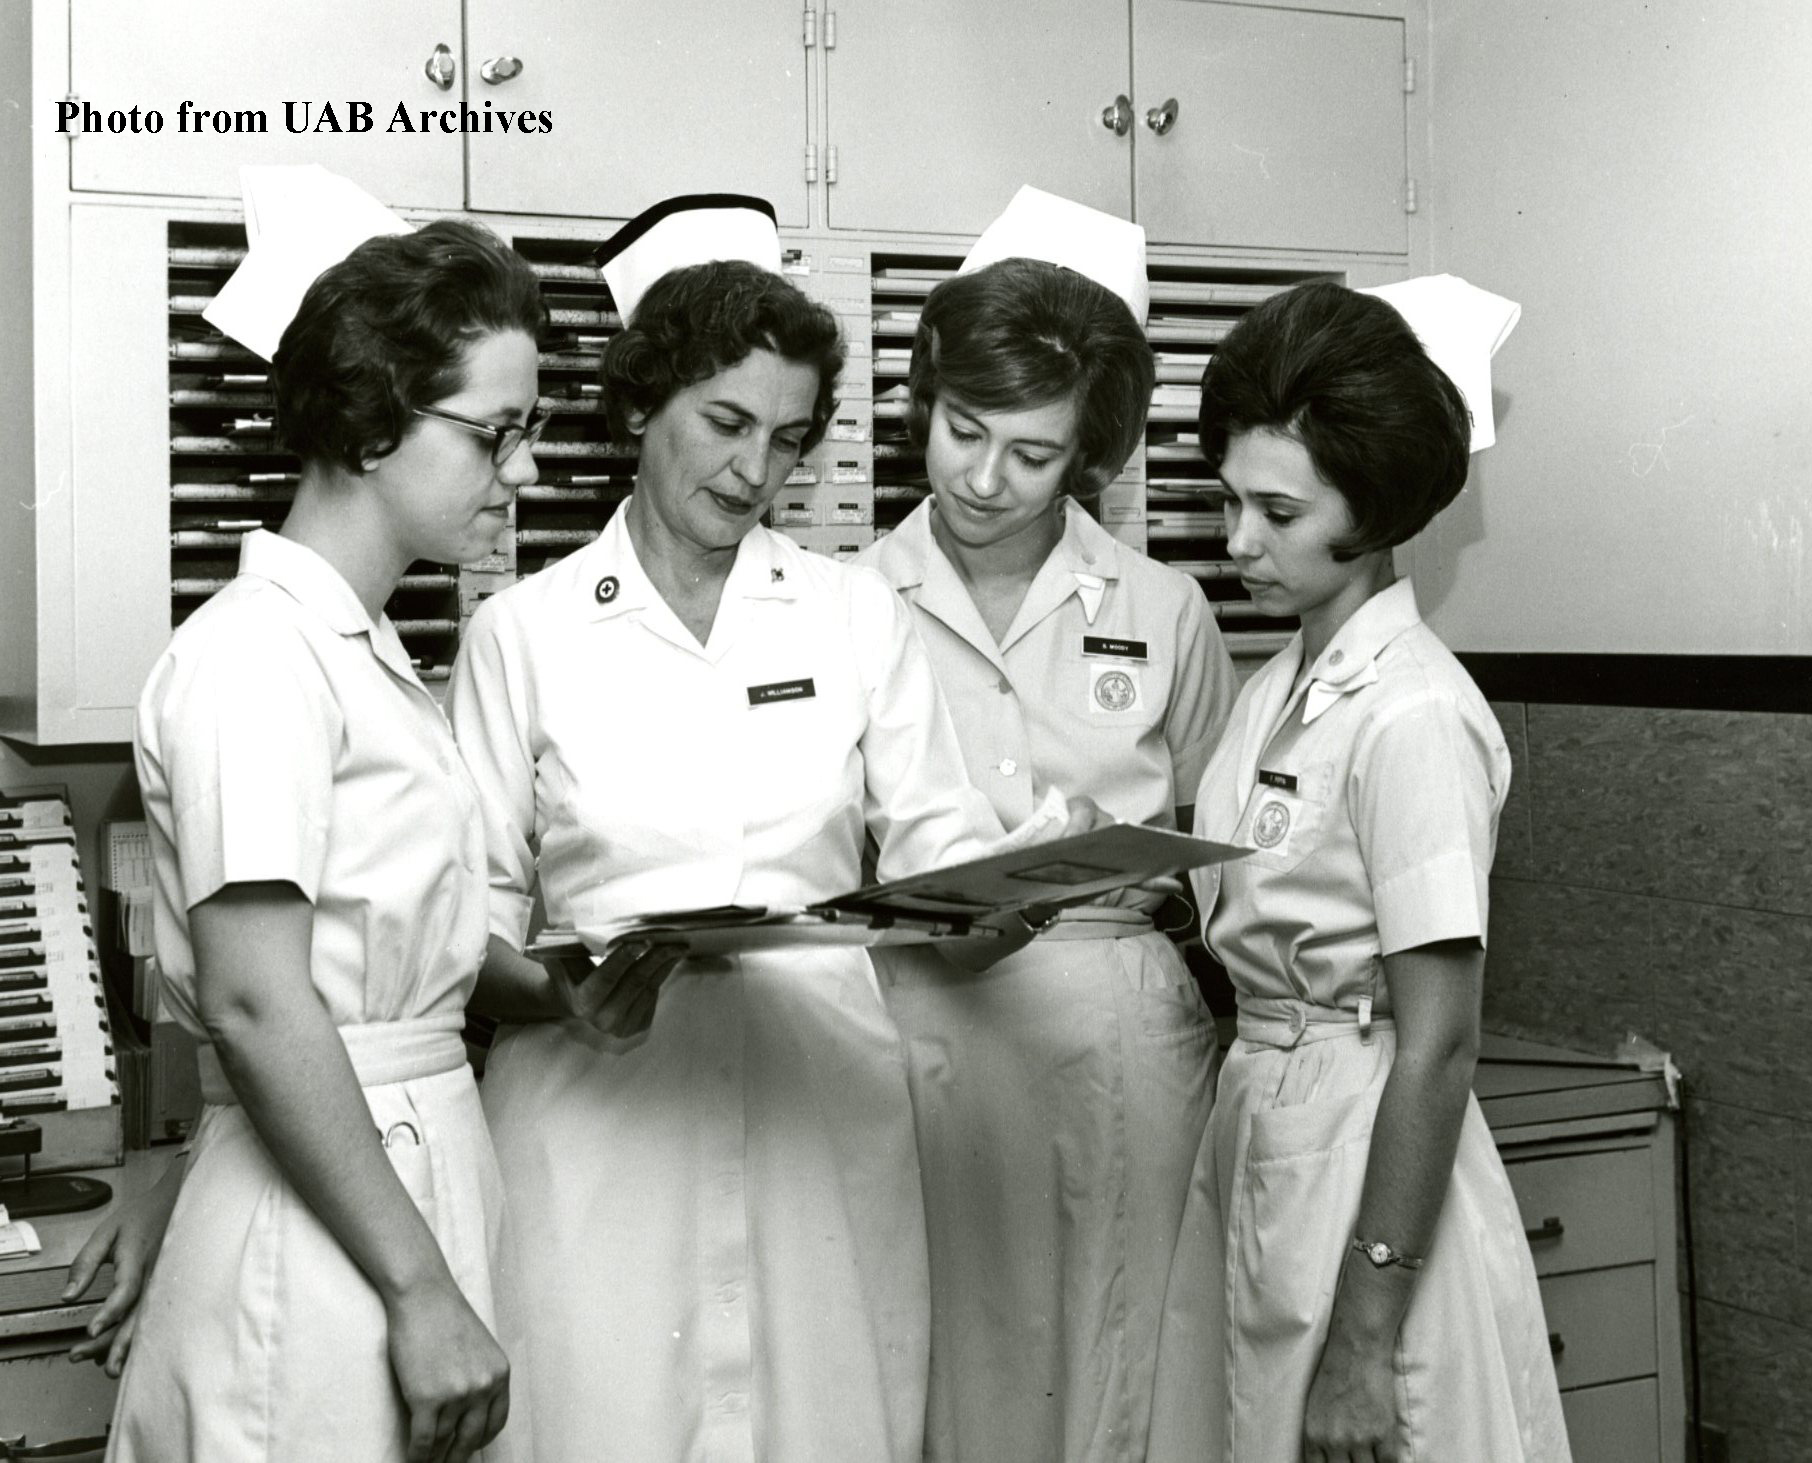 Four female nursing students study a patient chart